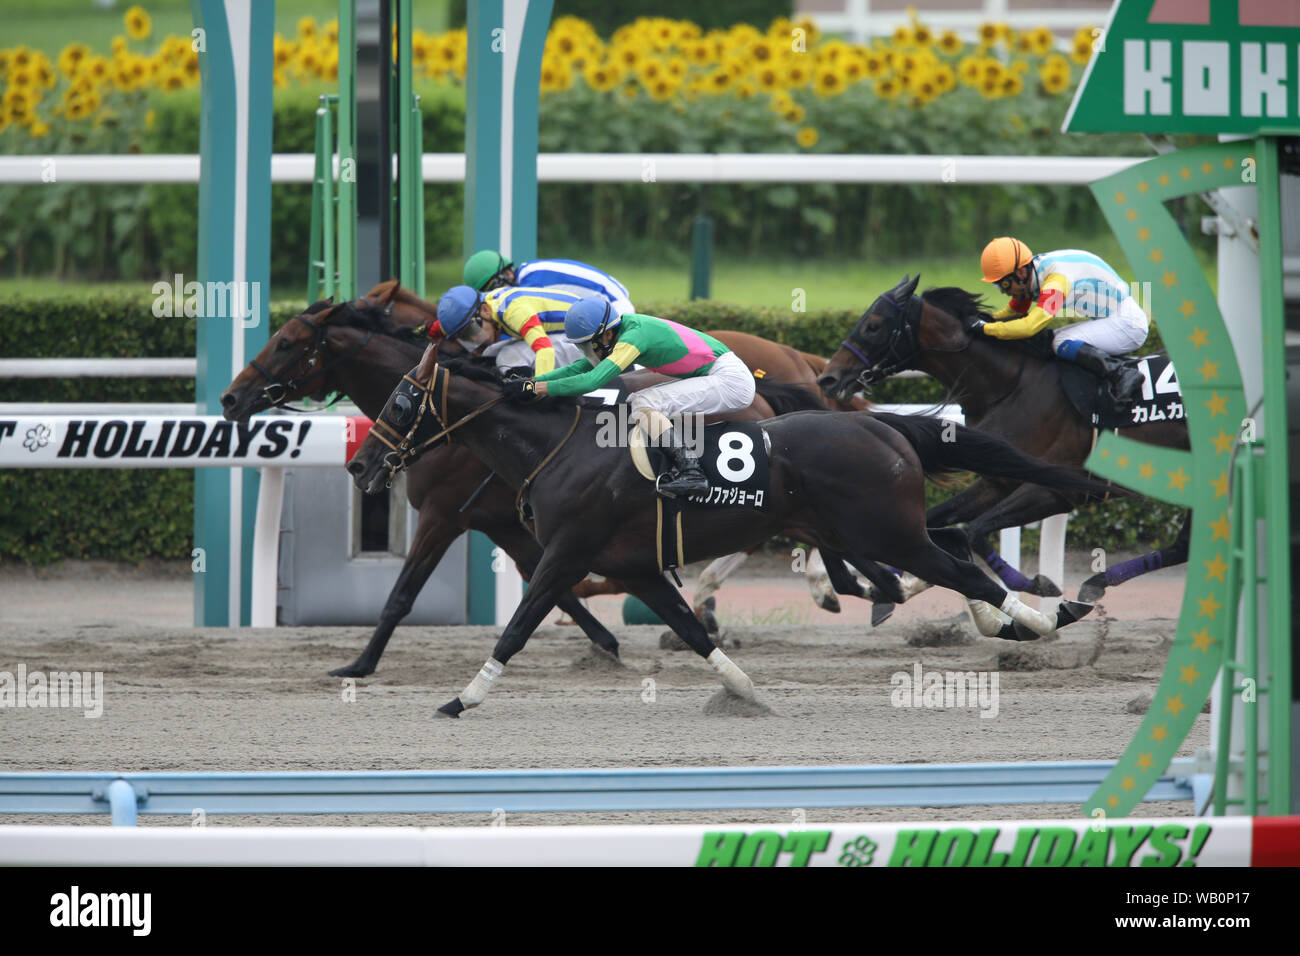 Fukuoka, Japan. 18th Aug, 2019. (L-R) Gempachi Lucifer (Yuji Nakai), Gold Lagoon (Kohei Matsuyama), Tagano Fagiolo (Ryota Sameshima), Come Come (Yoshitsugu Okada) Horse Racing : Tagano Fagiolo ridden by Ryota Sameshima wins the Kokura 9R Amakusa Tokubetsu at Kokura Racecourse in Fukuoka, Japan . Credit: Eiichi Yamane/AFLO/Alamy Live News Stock Photo